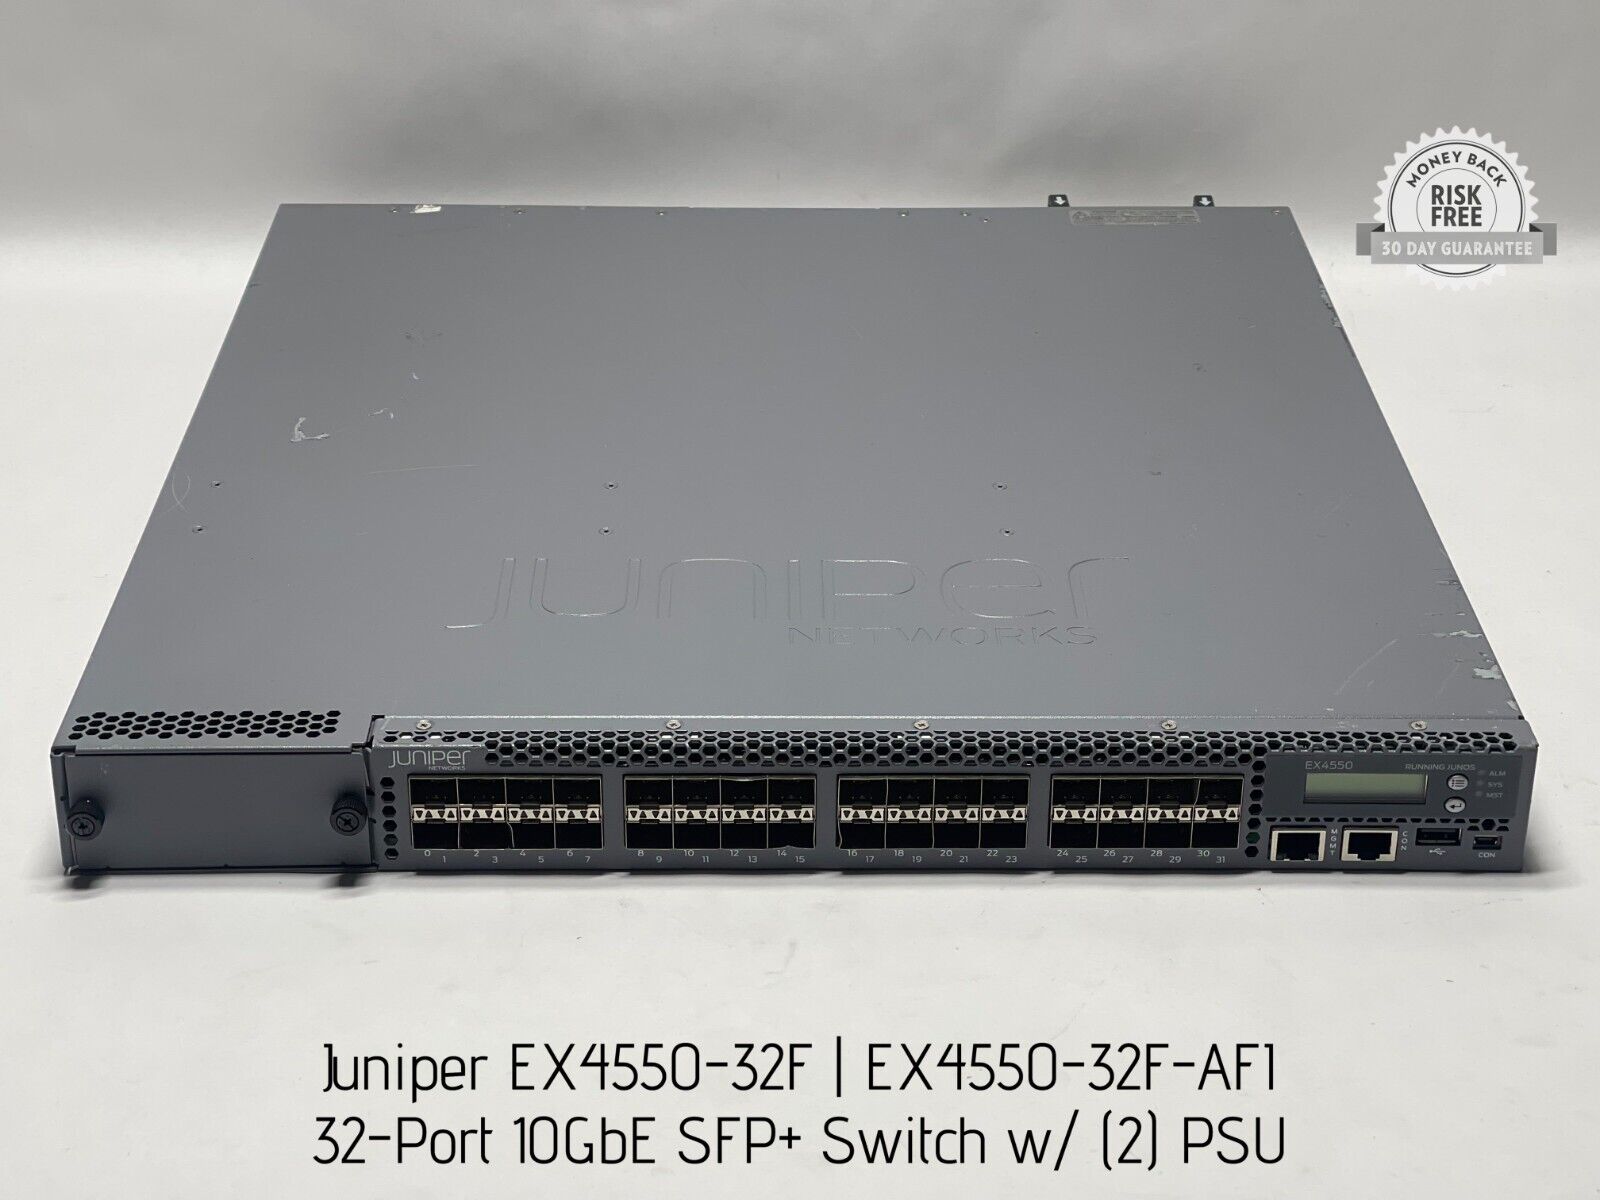 Juniper EX4550-32F 32-Port 10GbE SFP+ Switch w/ (2) PSU, EX4550-32F-AFI